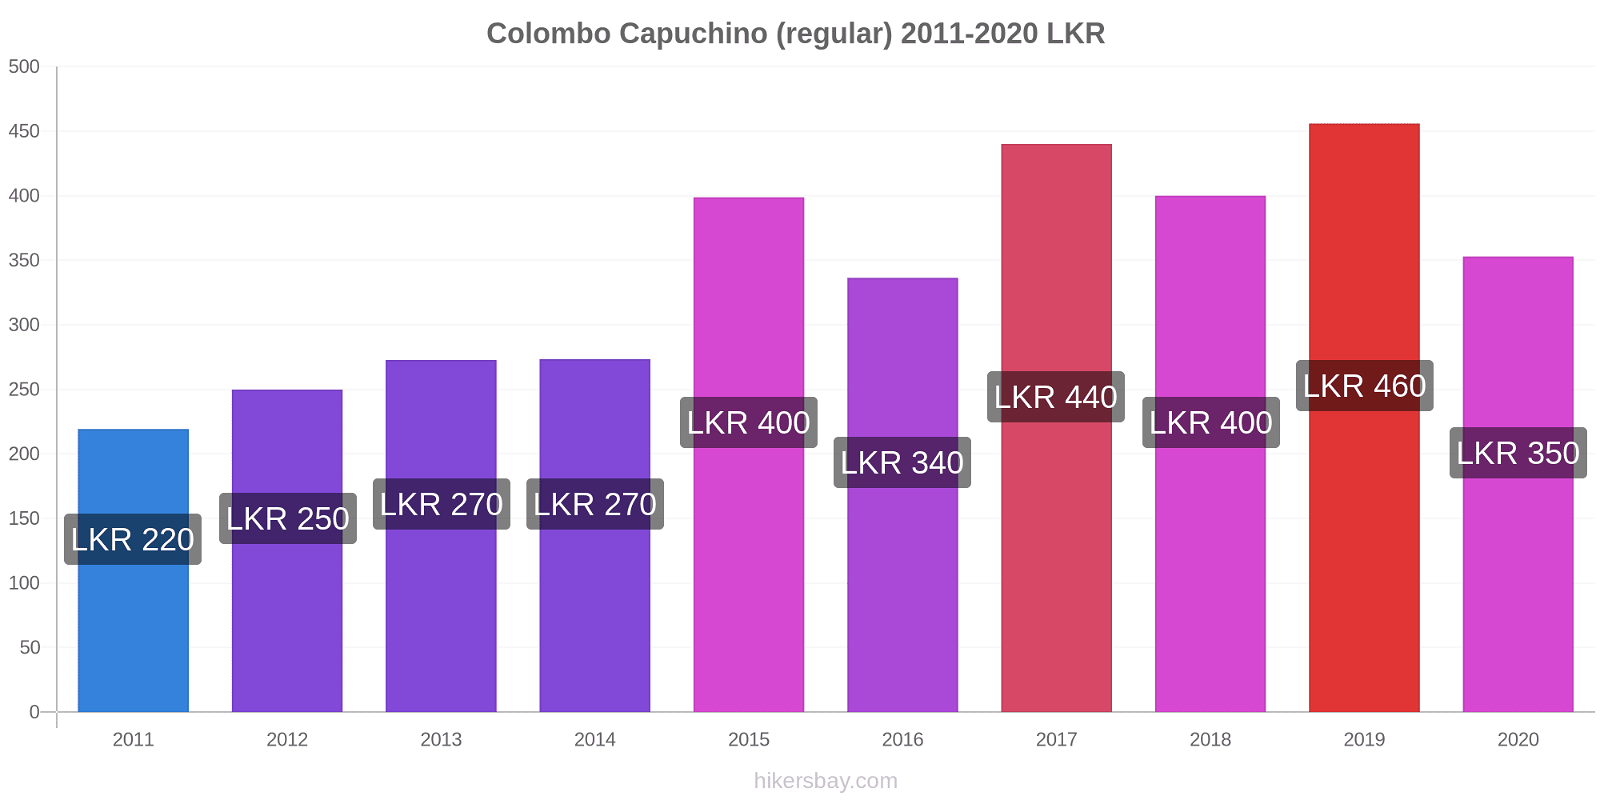 Colombo cambios de precios Capuchino (regular) hikersbay.com